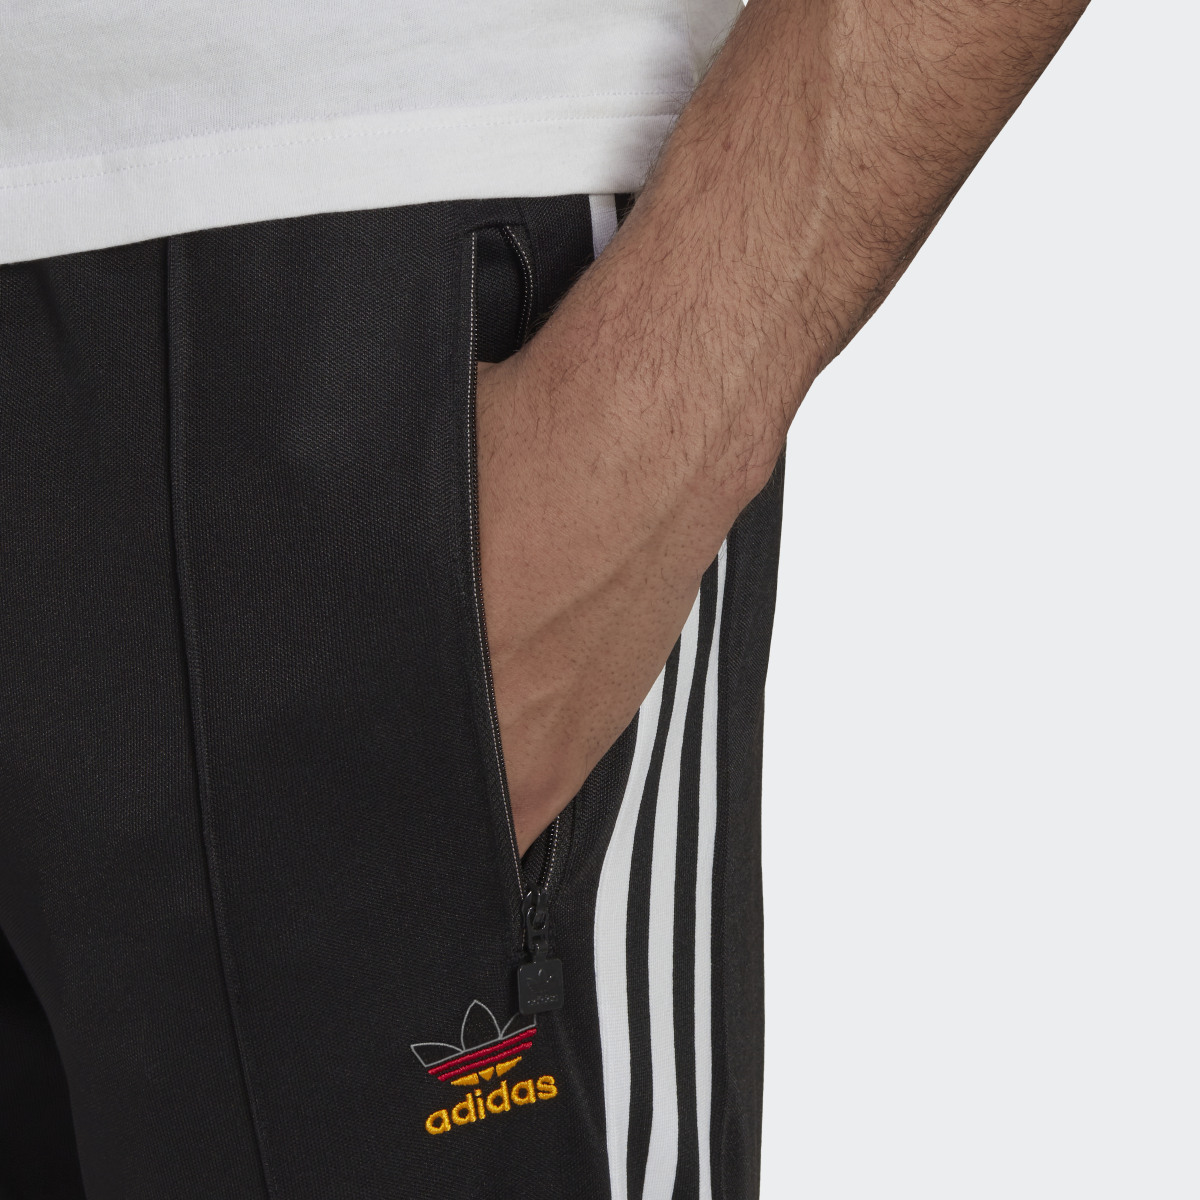 Adidas Pants Deportivos Beckenbauer. 5